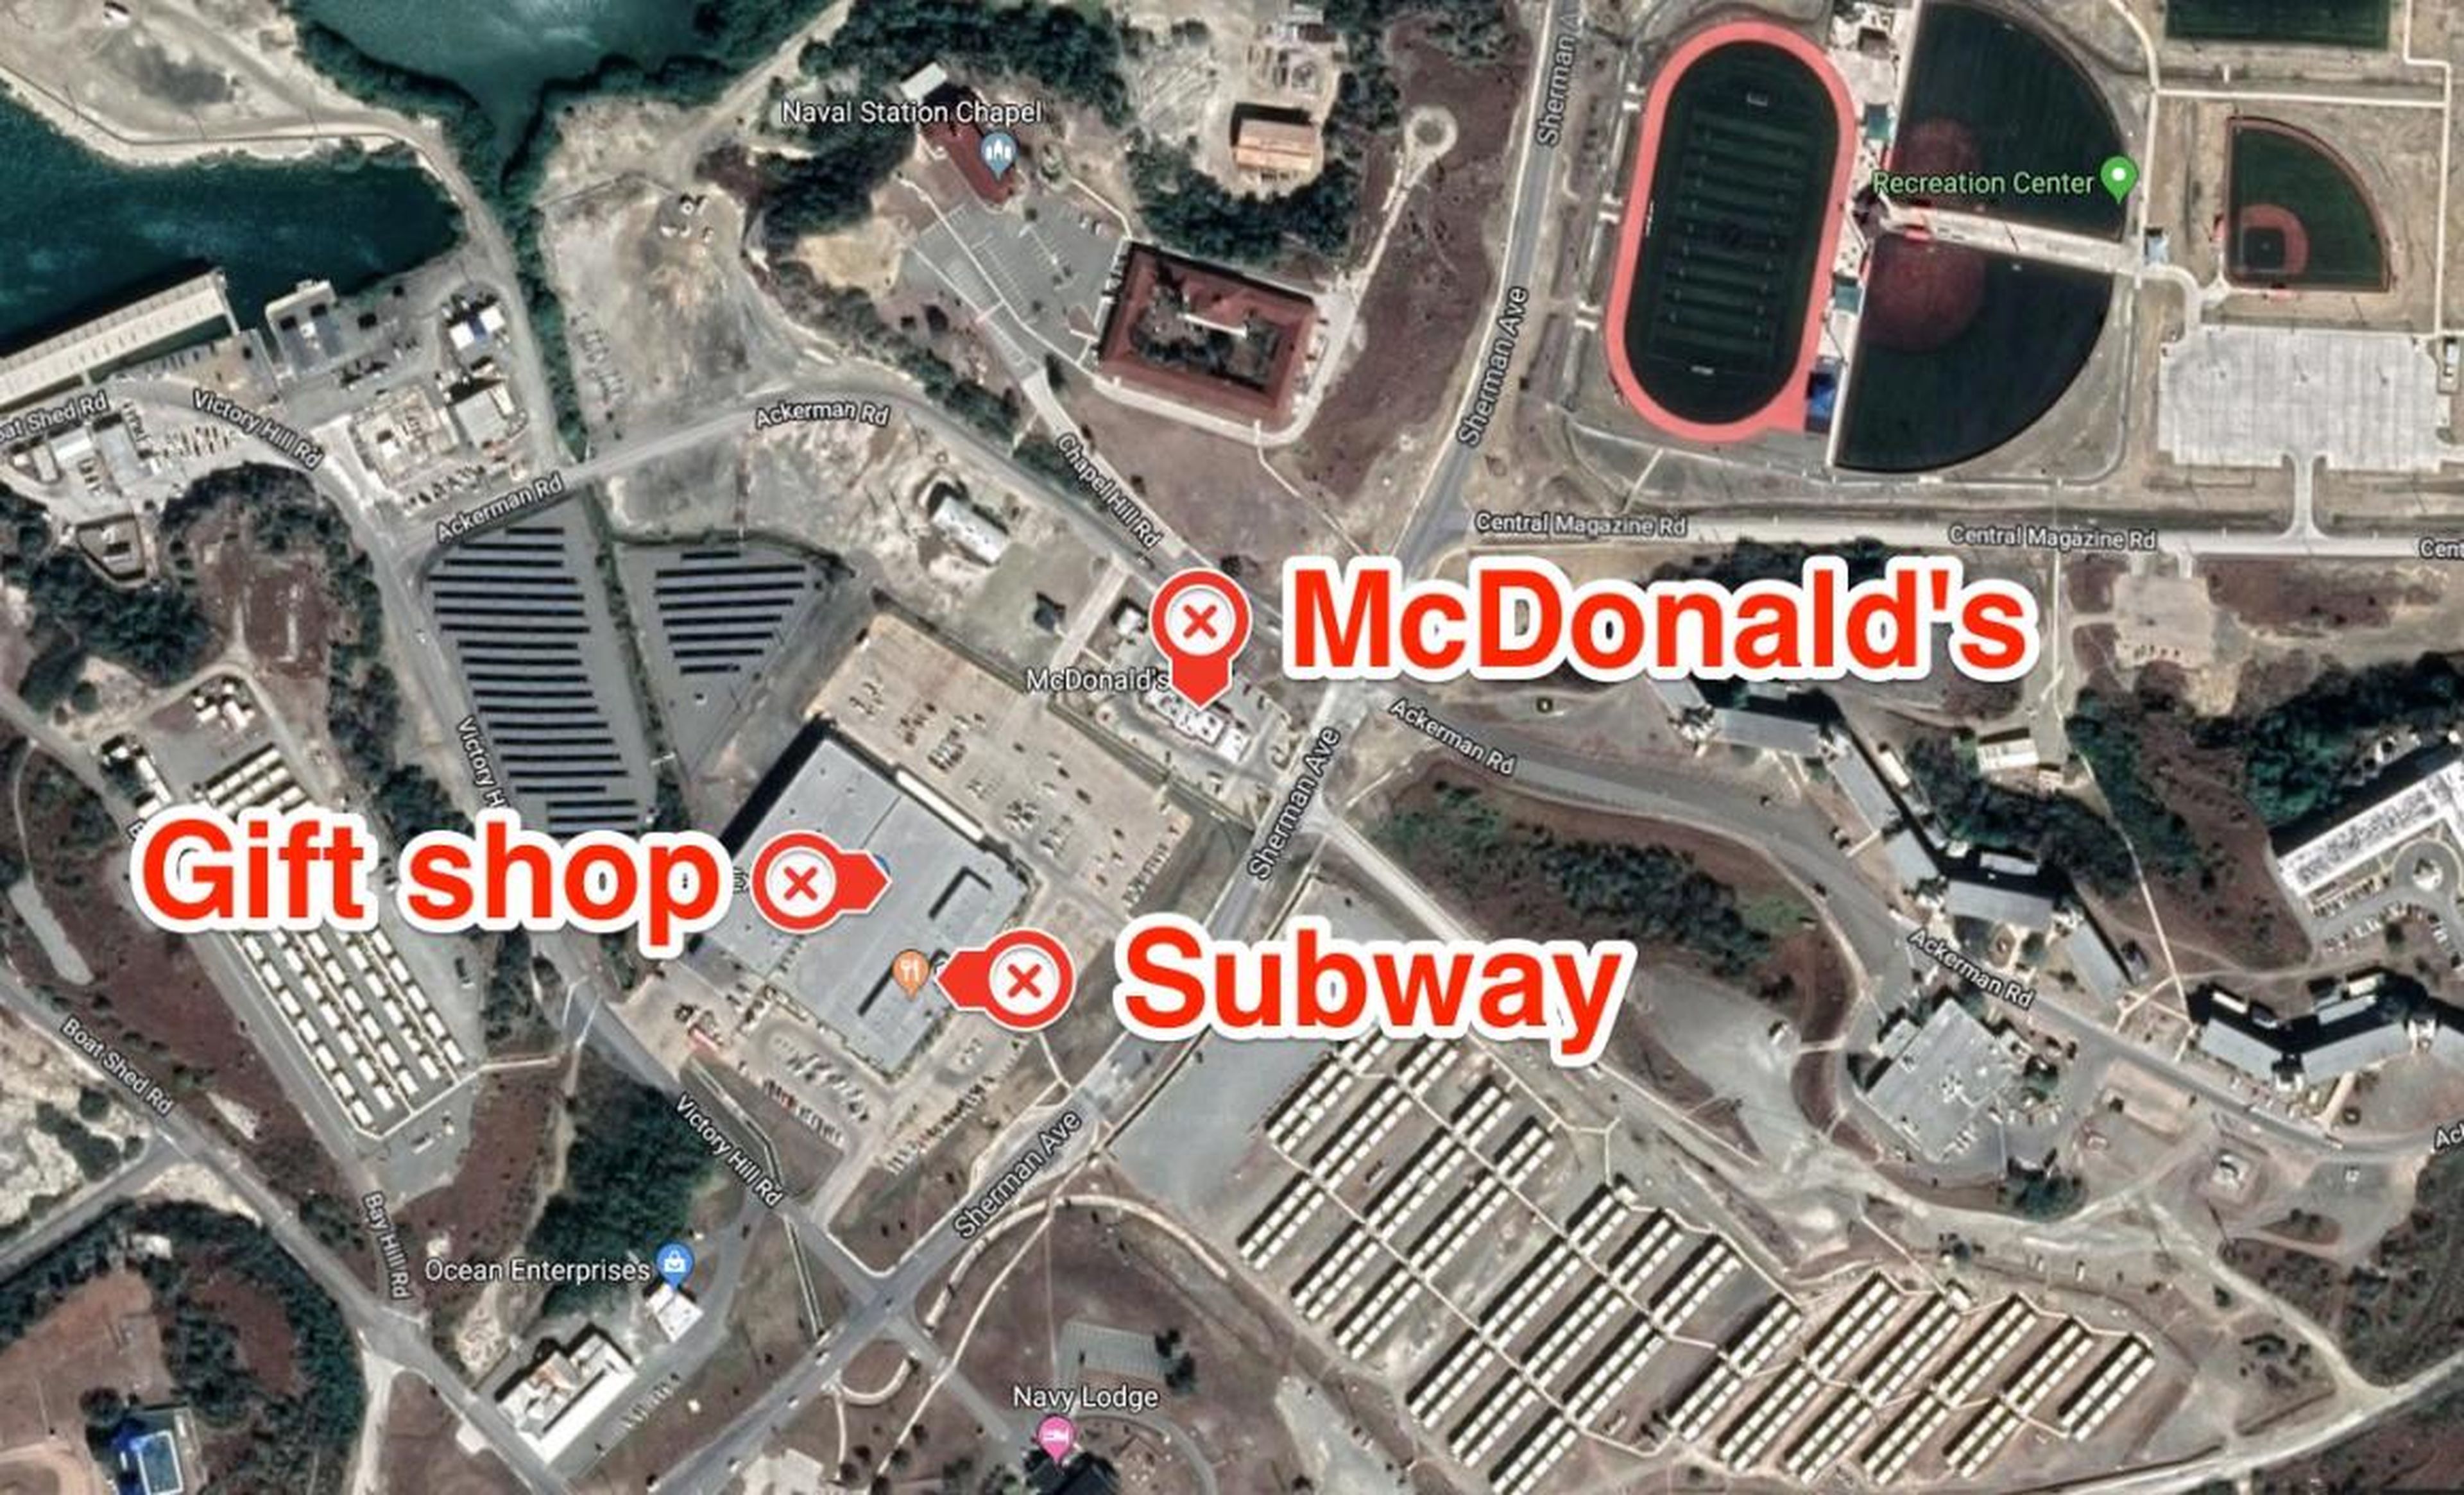 Vista aérea de la tienda de regalos Navy Exchange en la Bahía de Guantánamo.